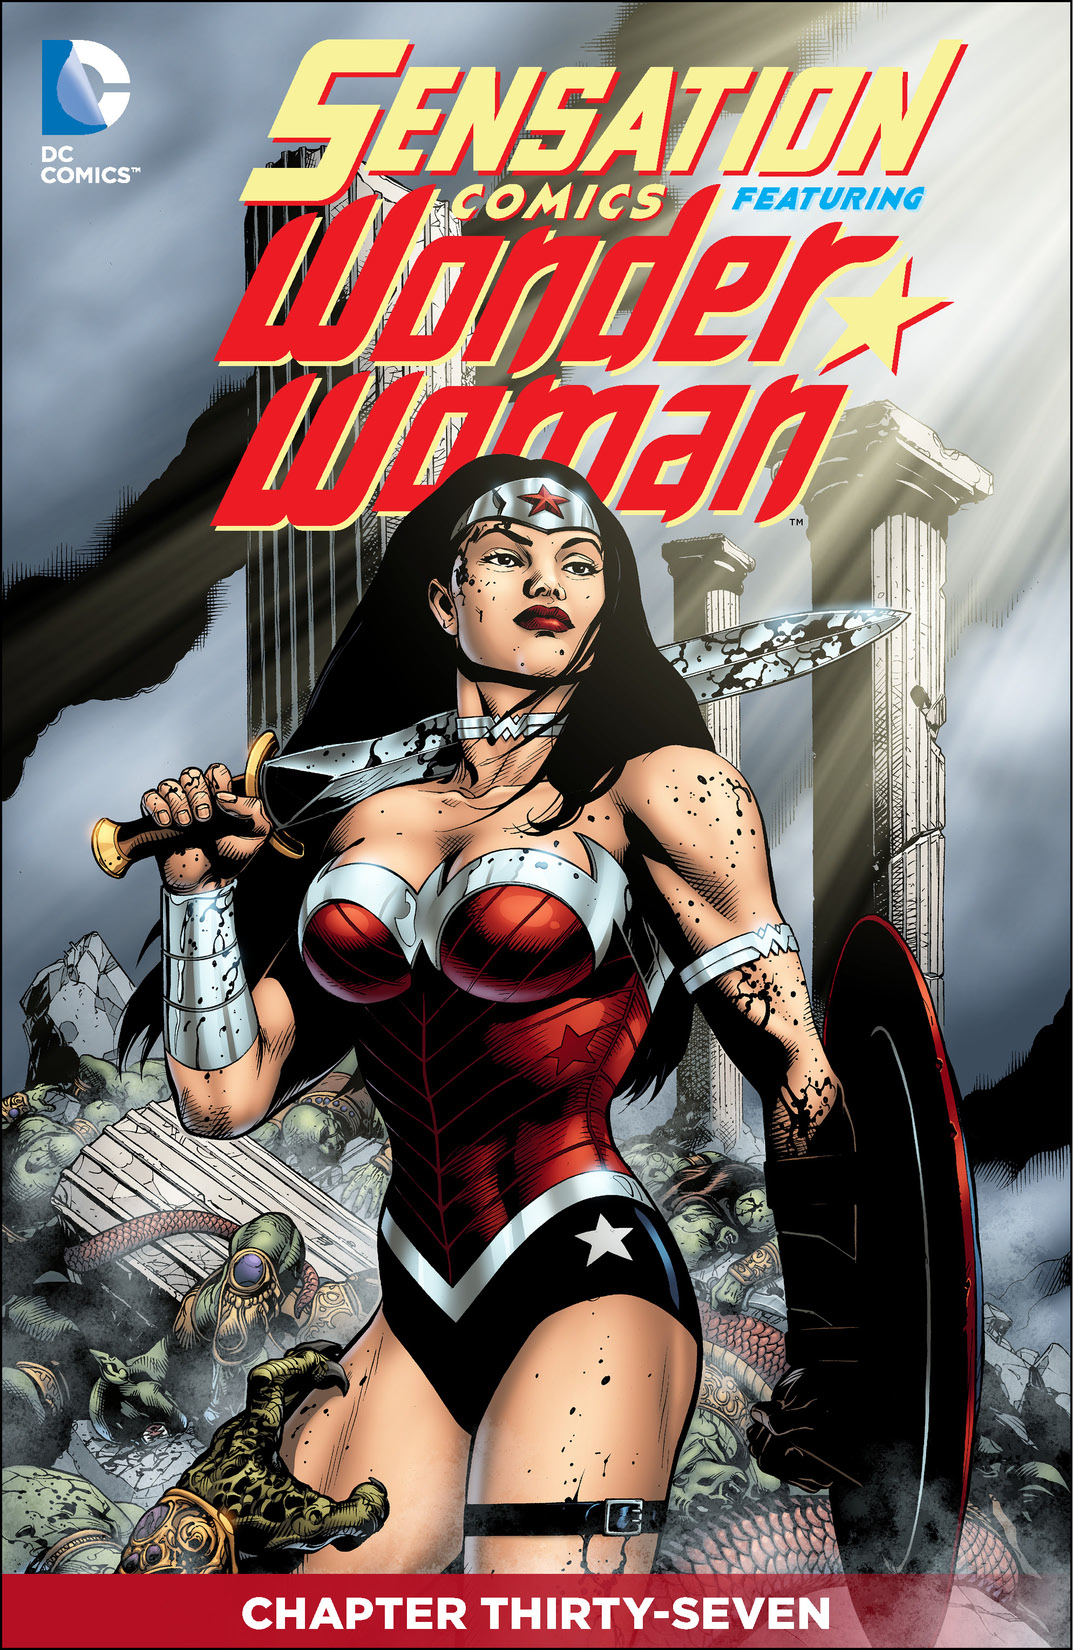 Sensation Comics Featuring Wonder Woman #37 preview images